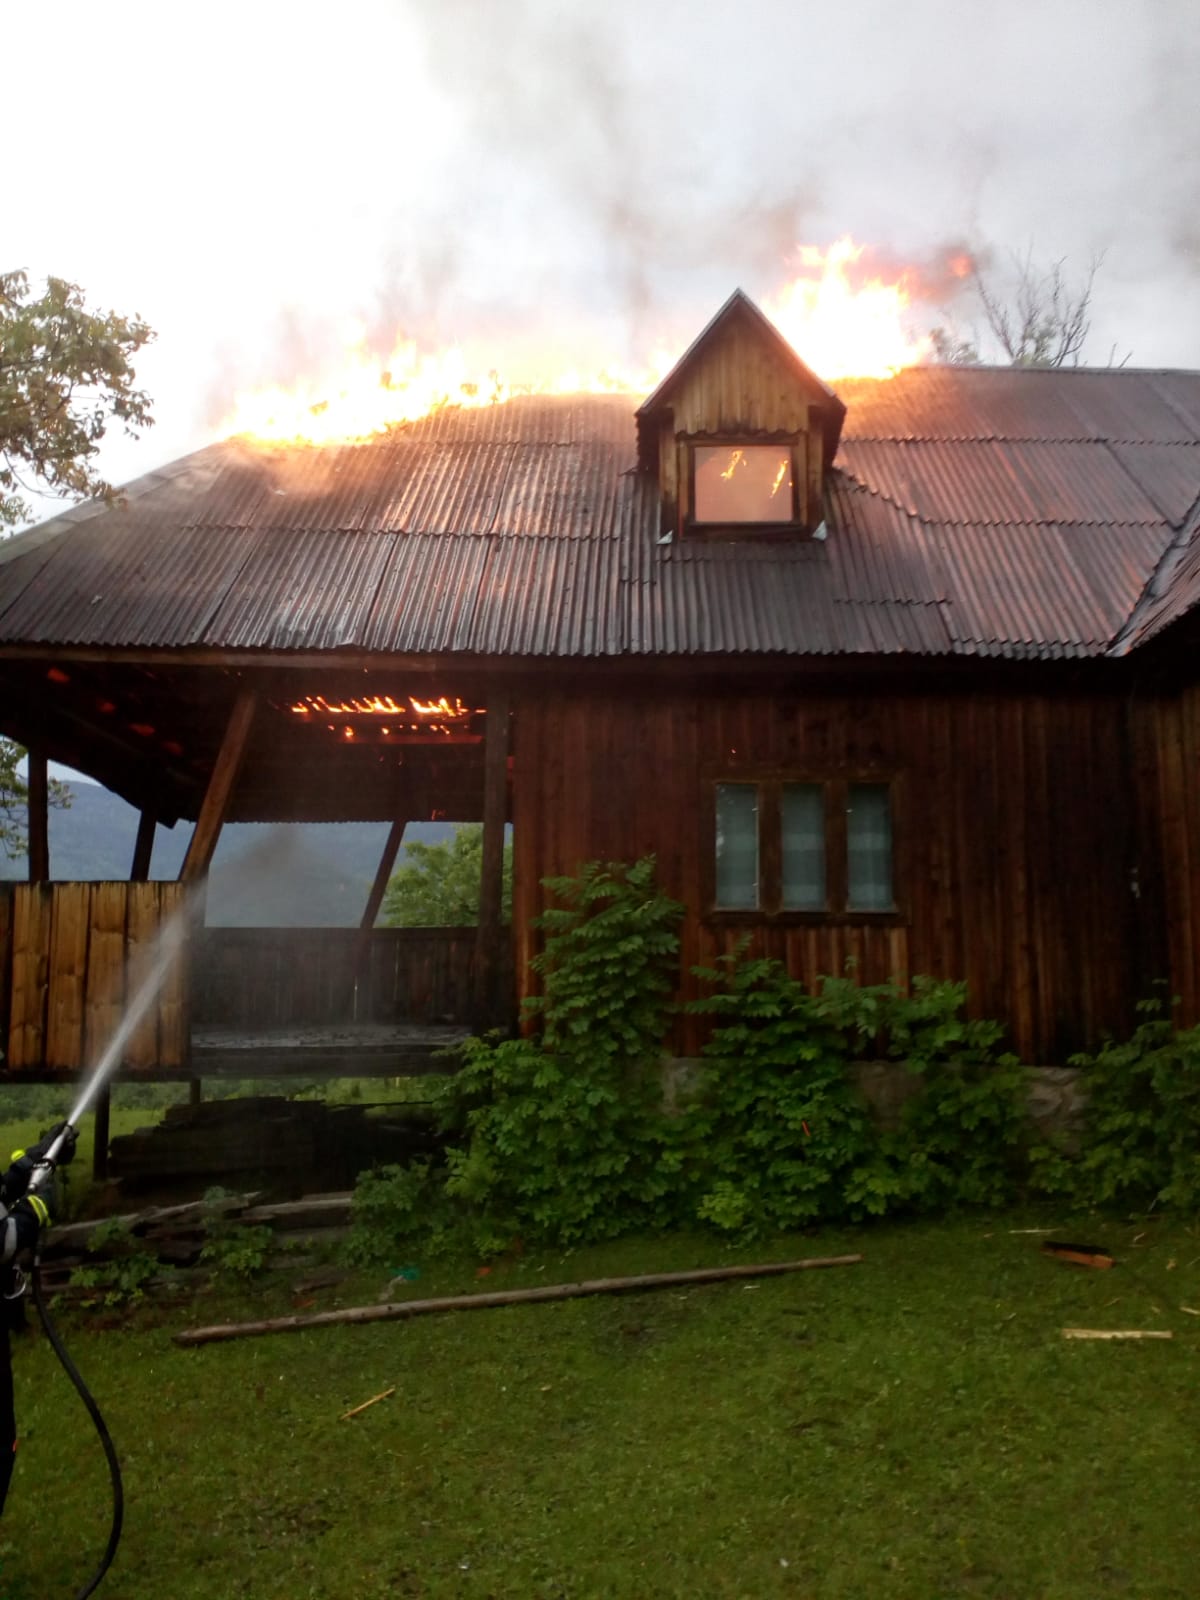 Incendiu la o cabană din Hoia